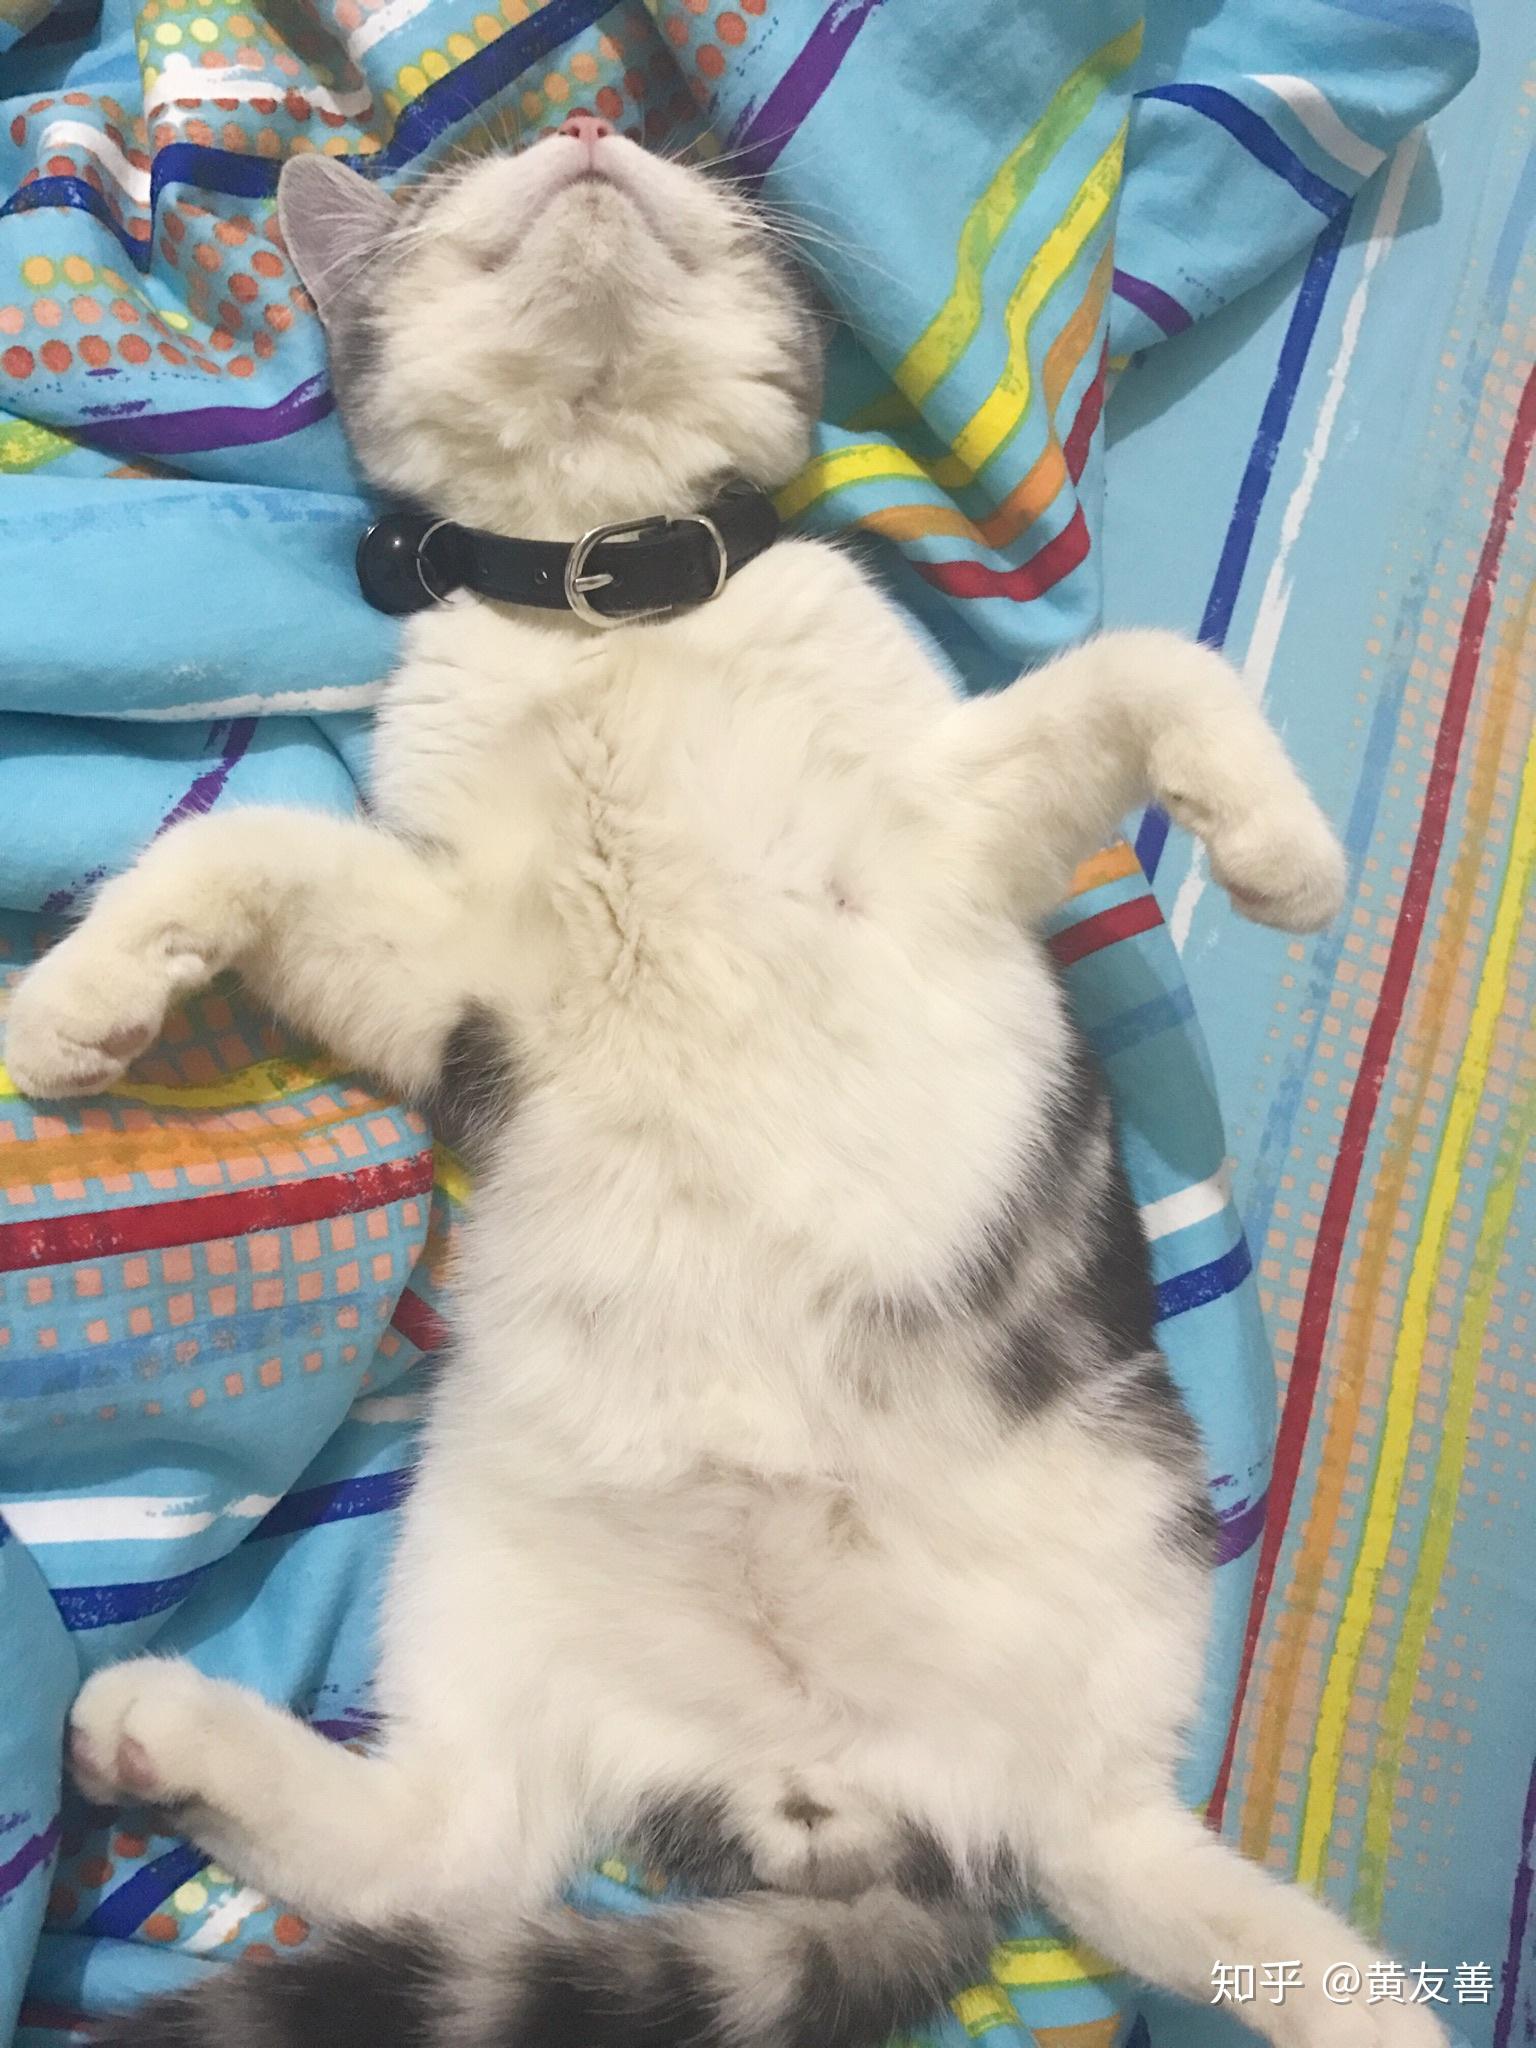 一只慵懒的小猫表情可爱躺在地毯上宠物人类朋友